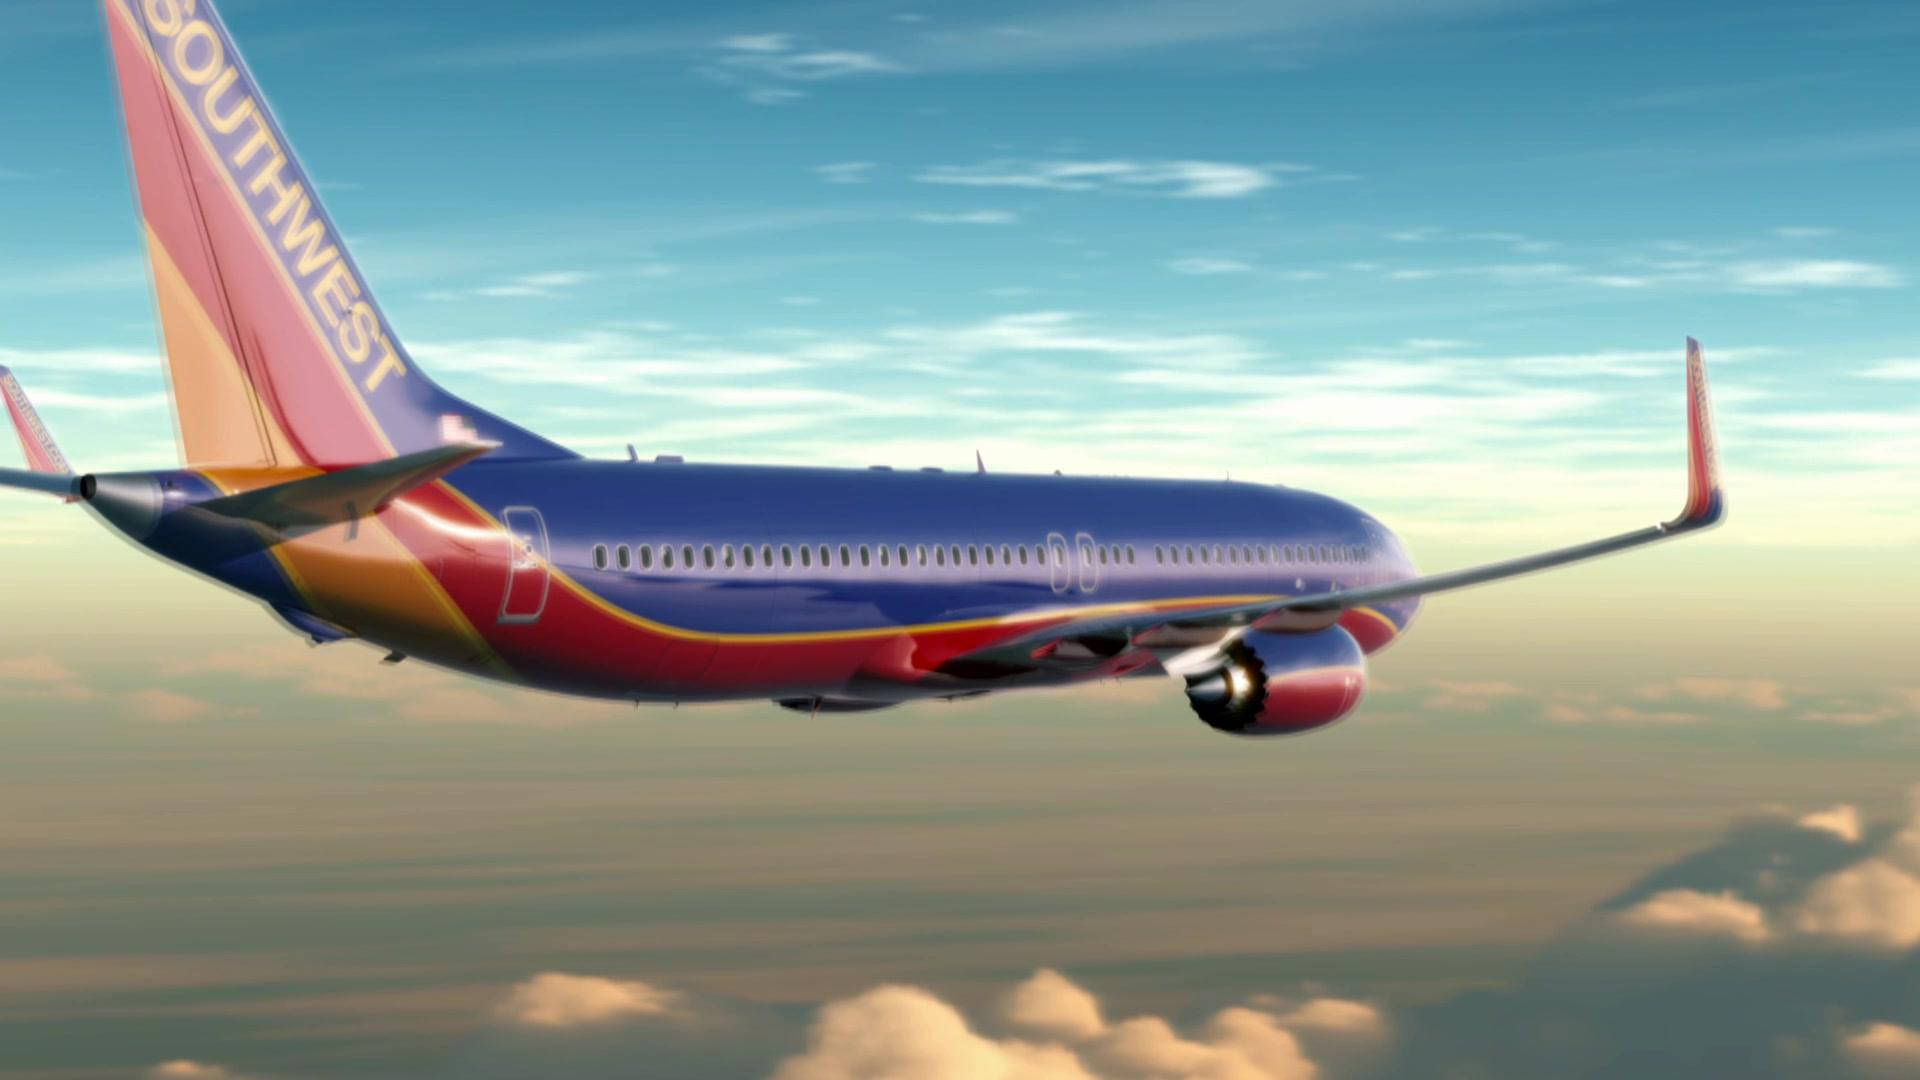 Dasflugzeug Von Southwest Airlines Fliegt Hoch In Den Himmel. Wallpaper